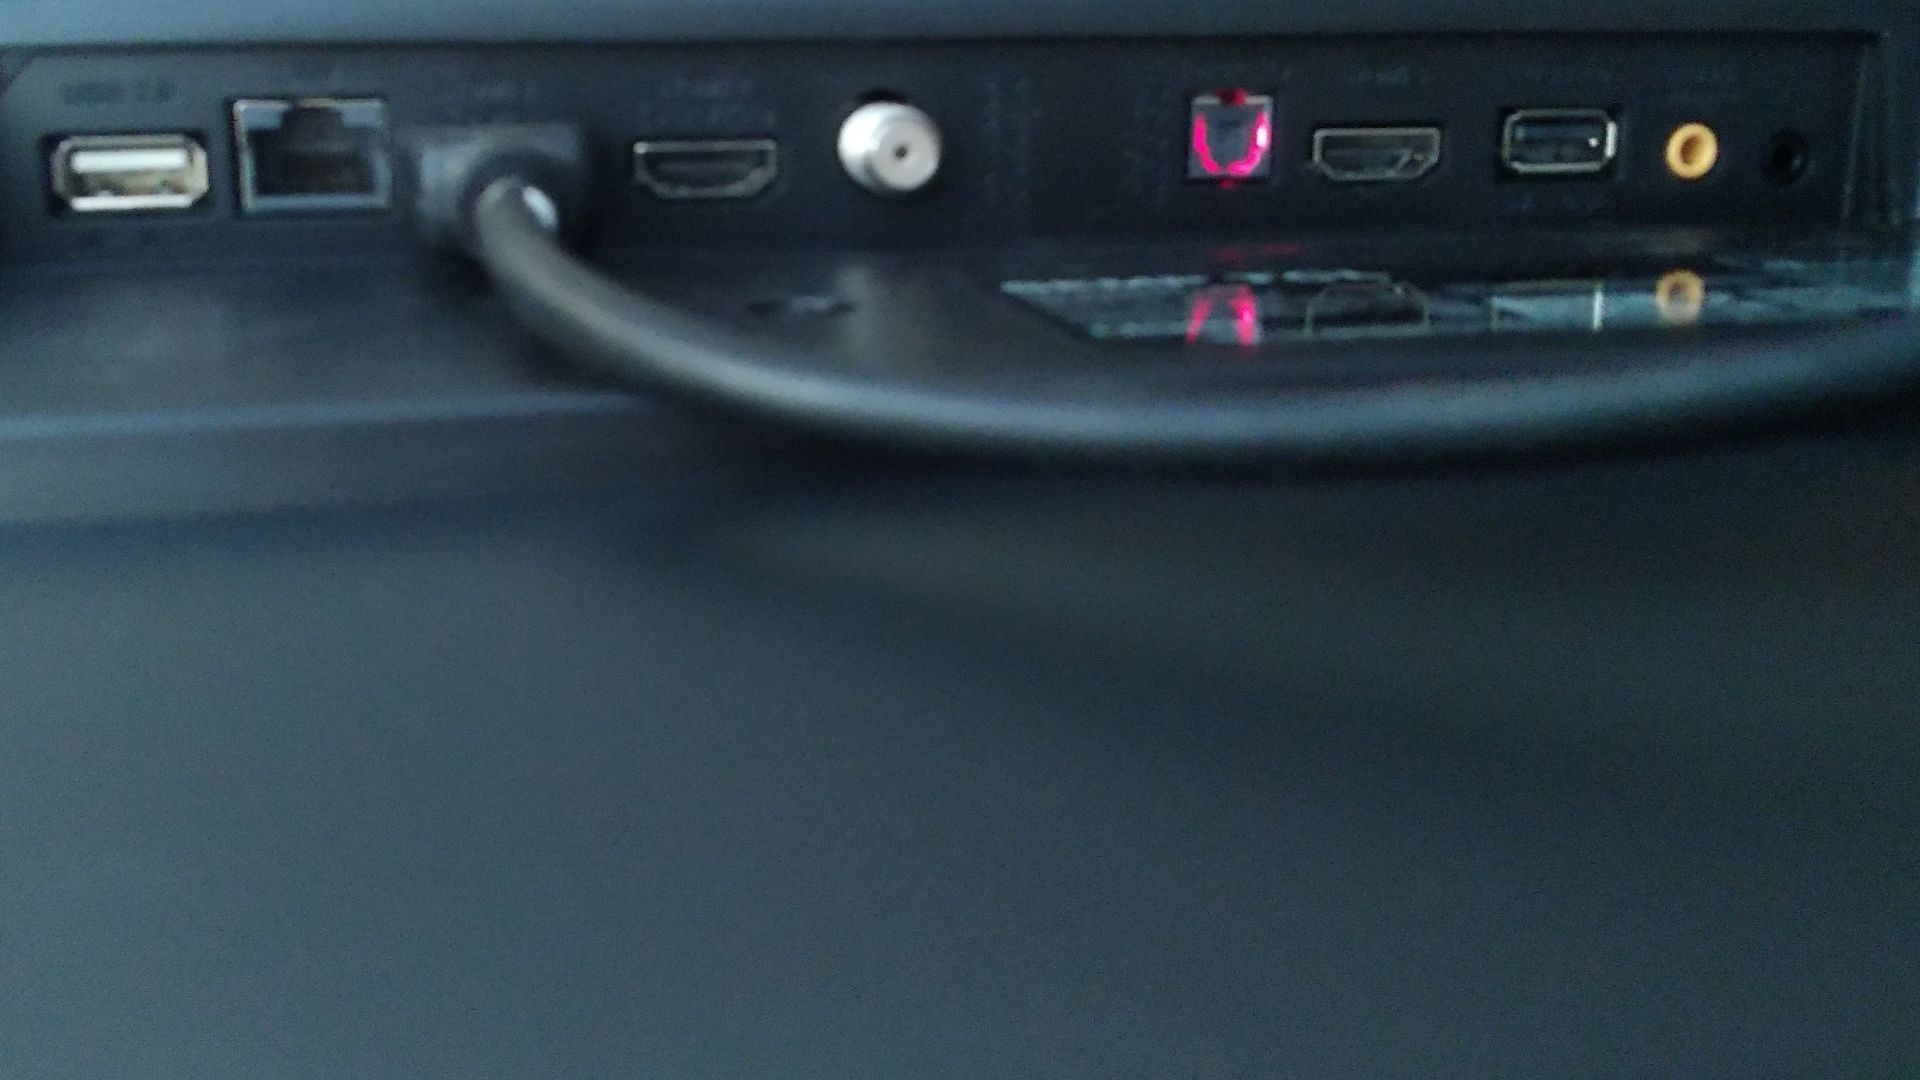 Essa TV tem 3 entradas HDMI, uma AUX, uma USB, uma óptica e também tem conexão com Wi-Fi e por bluetooth (Foto: Arquivo Pessoal, Leonor Militão)